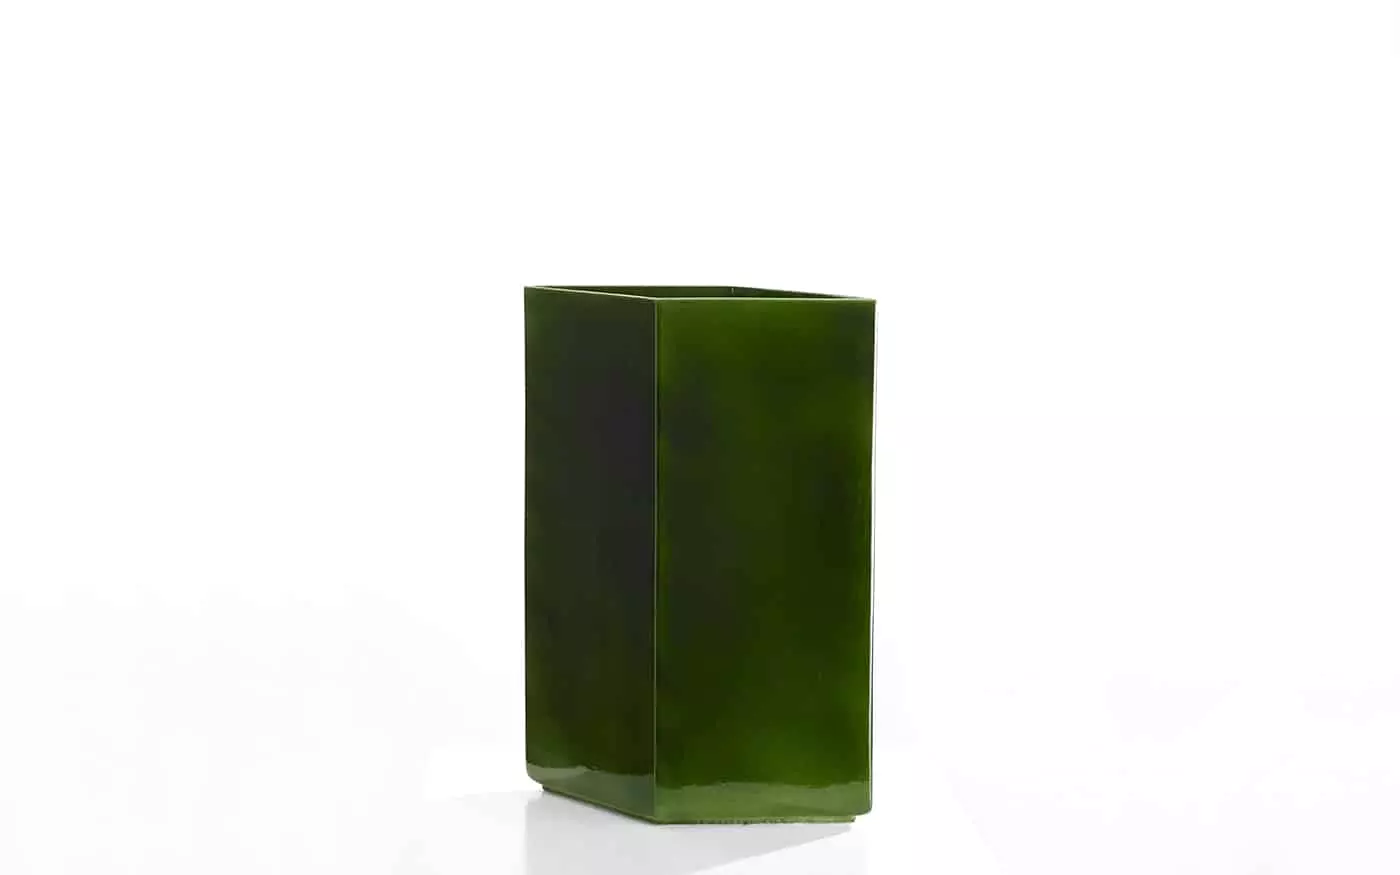 Vase Losange 67 green - Ronan and Erwan Bouroullec - .